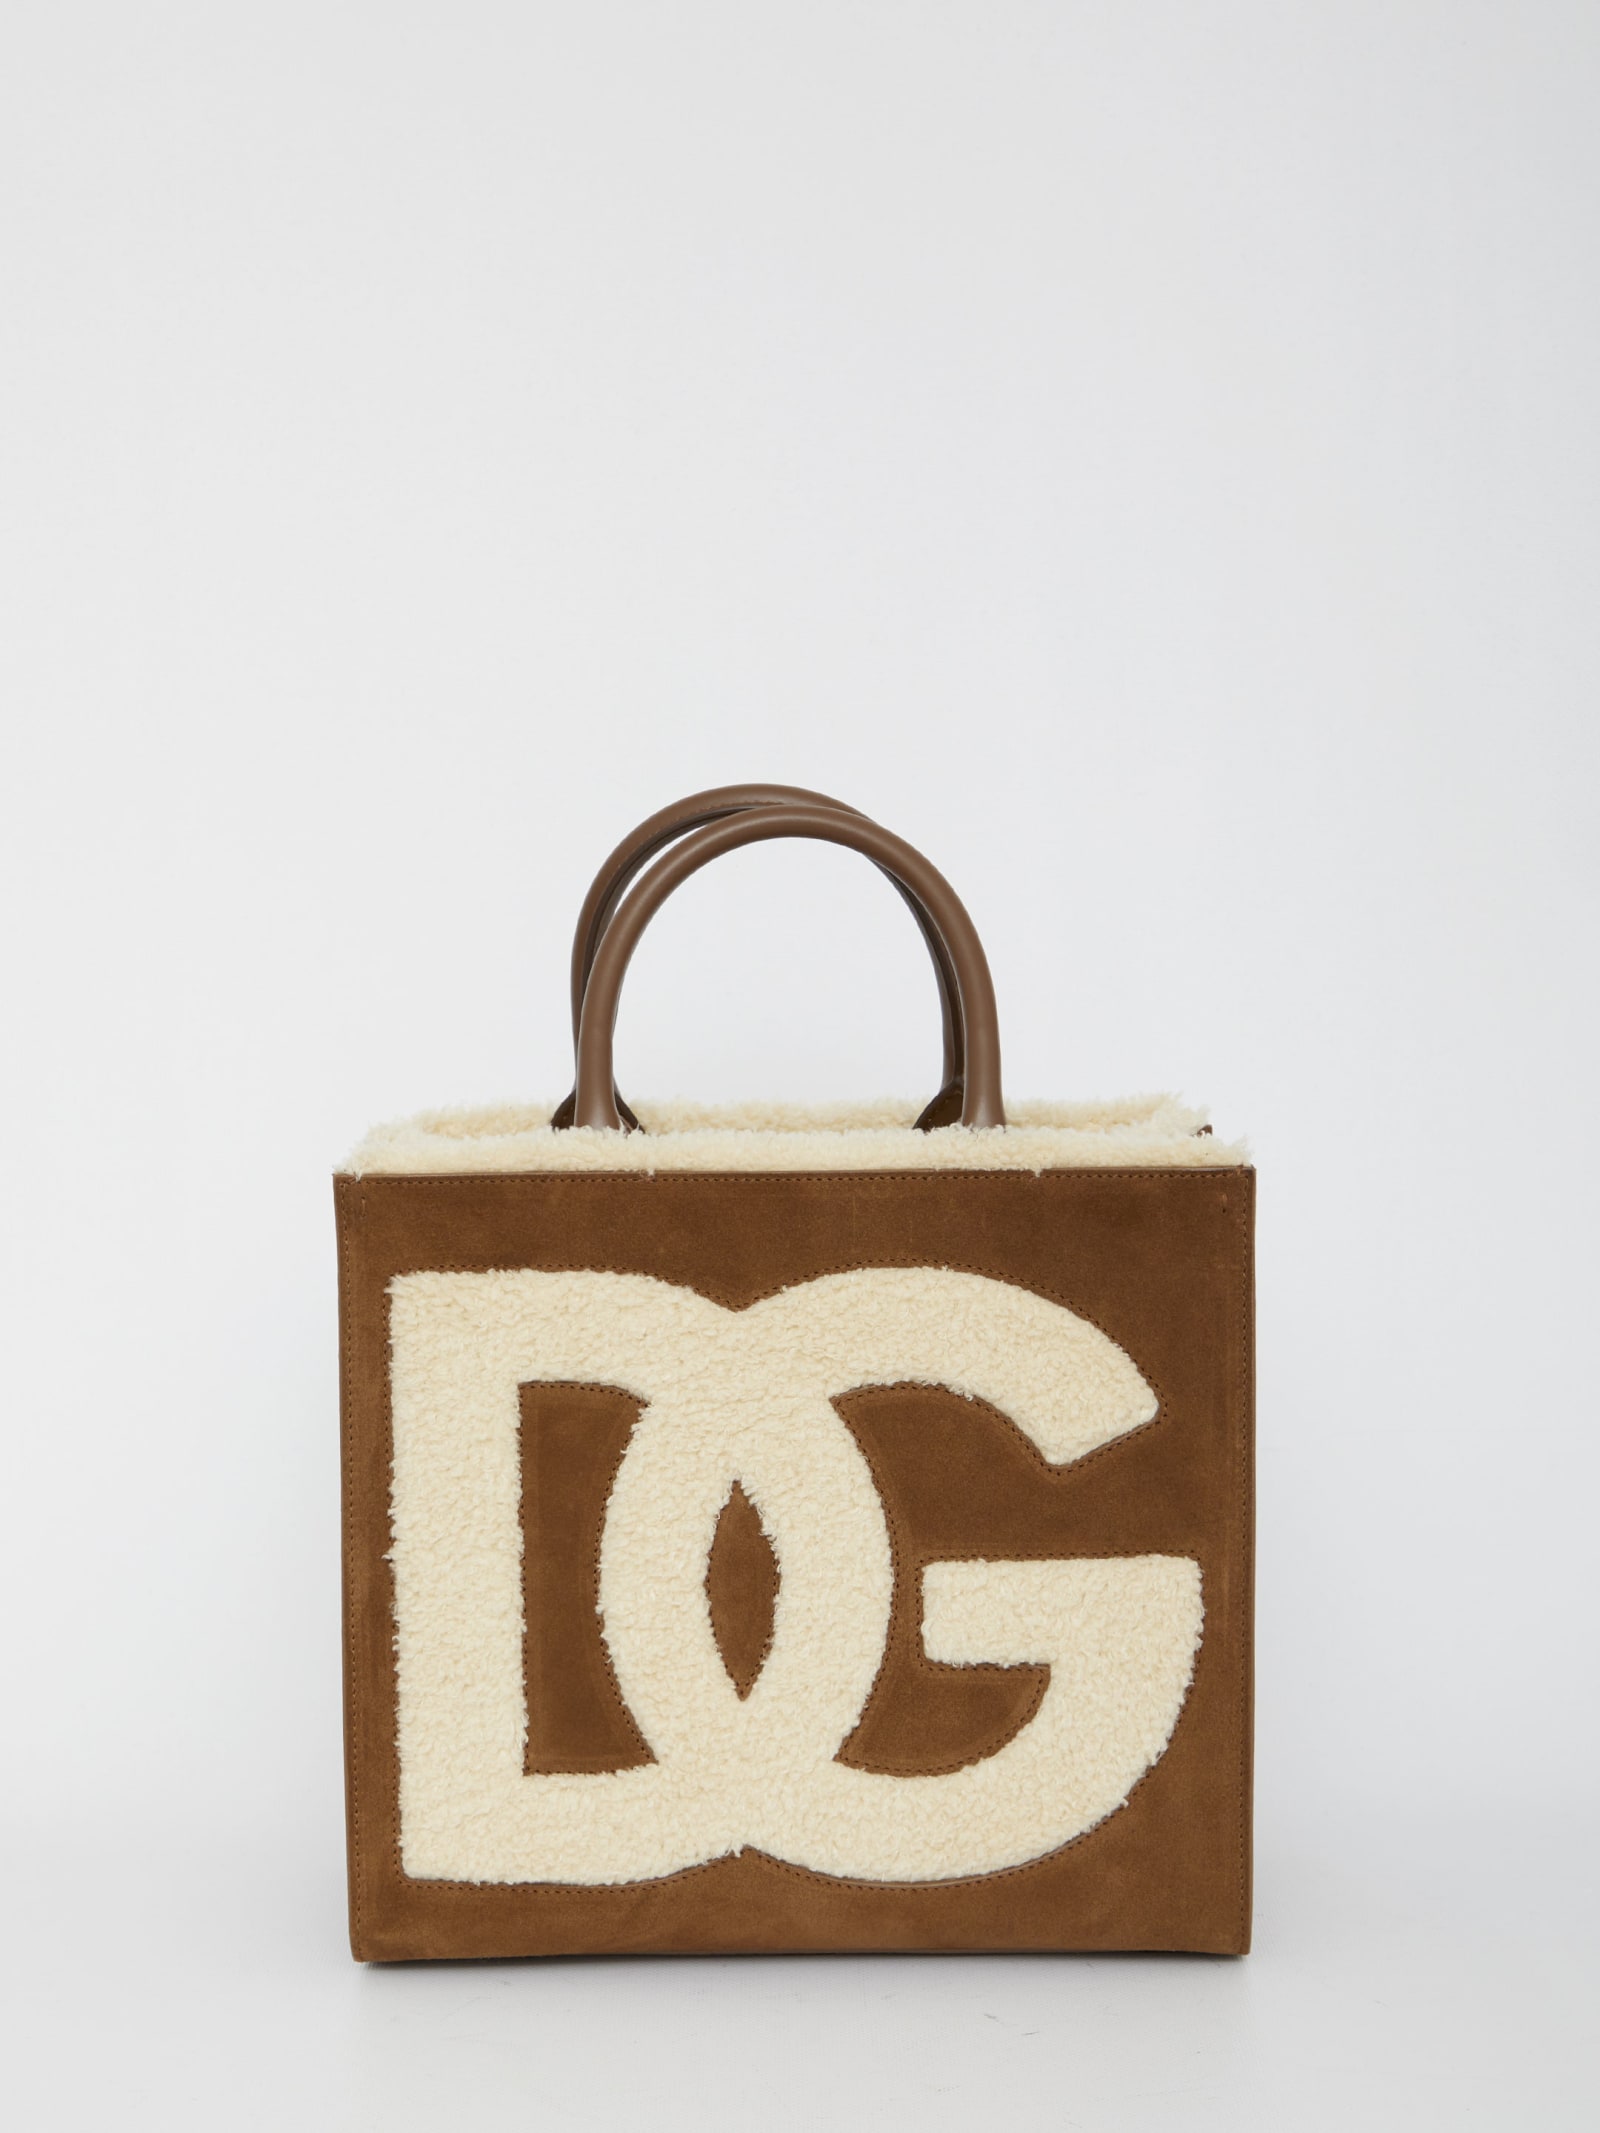 Dolce & Gabbana Dg Daily Tote Bag In Camel